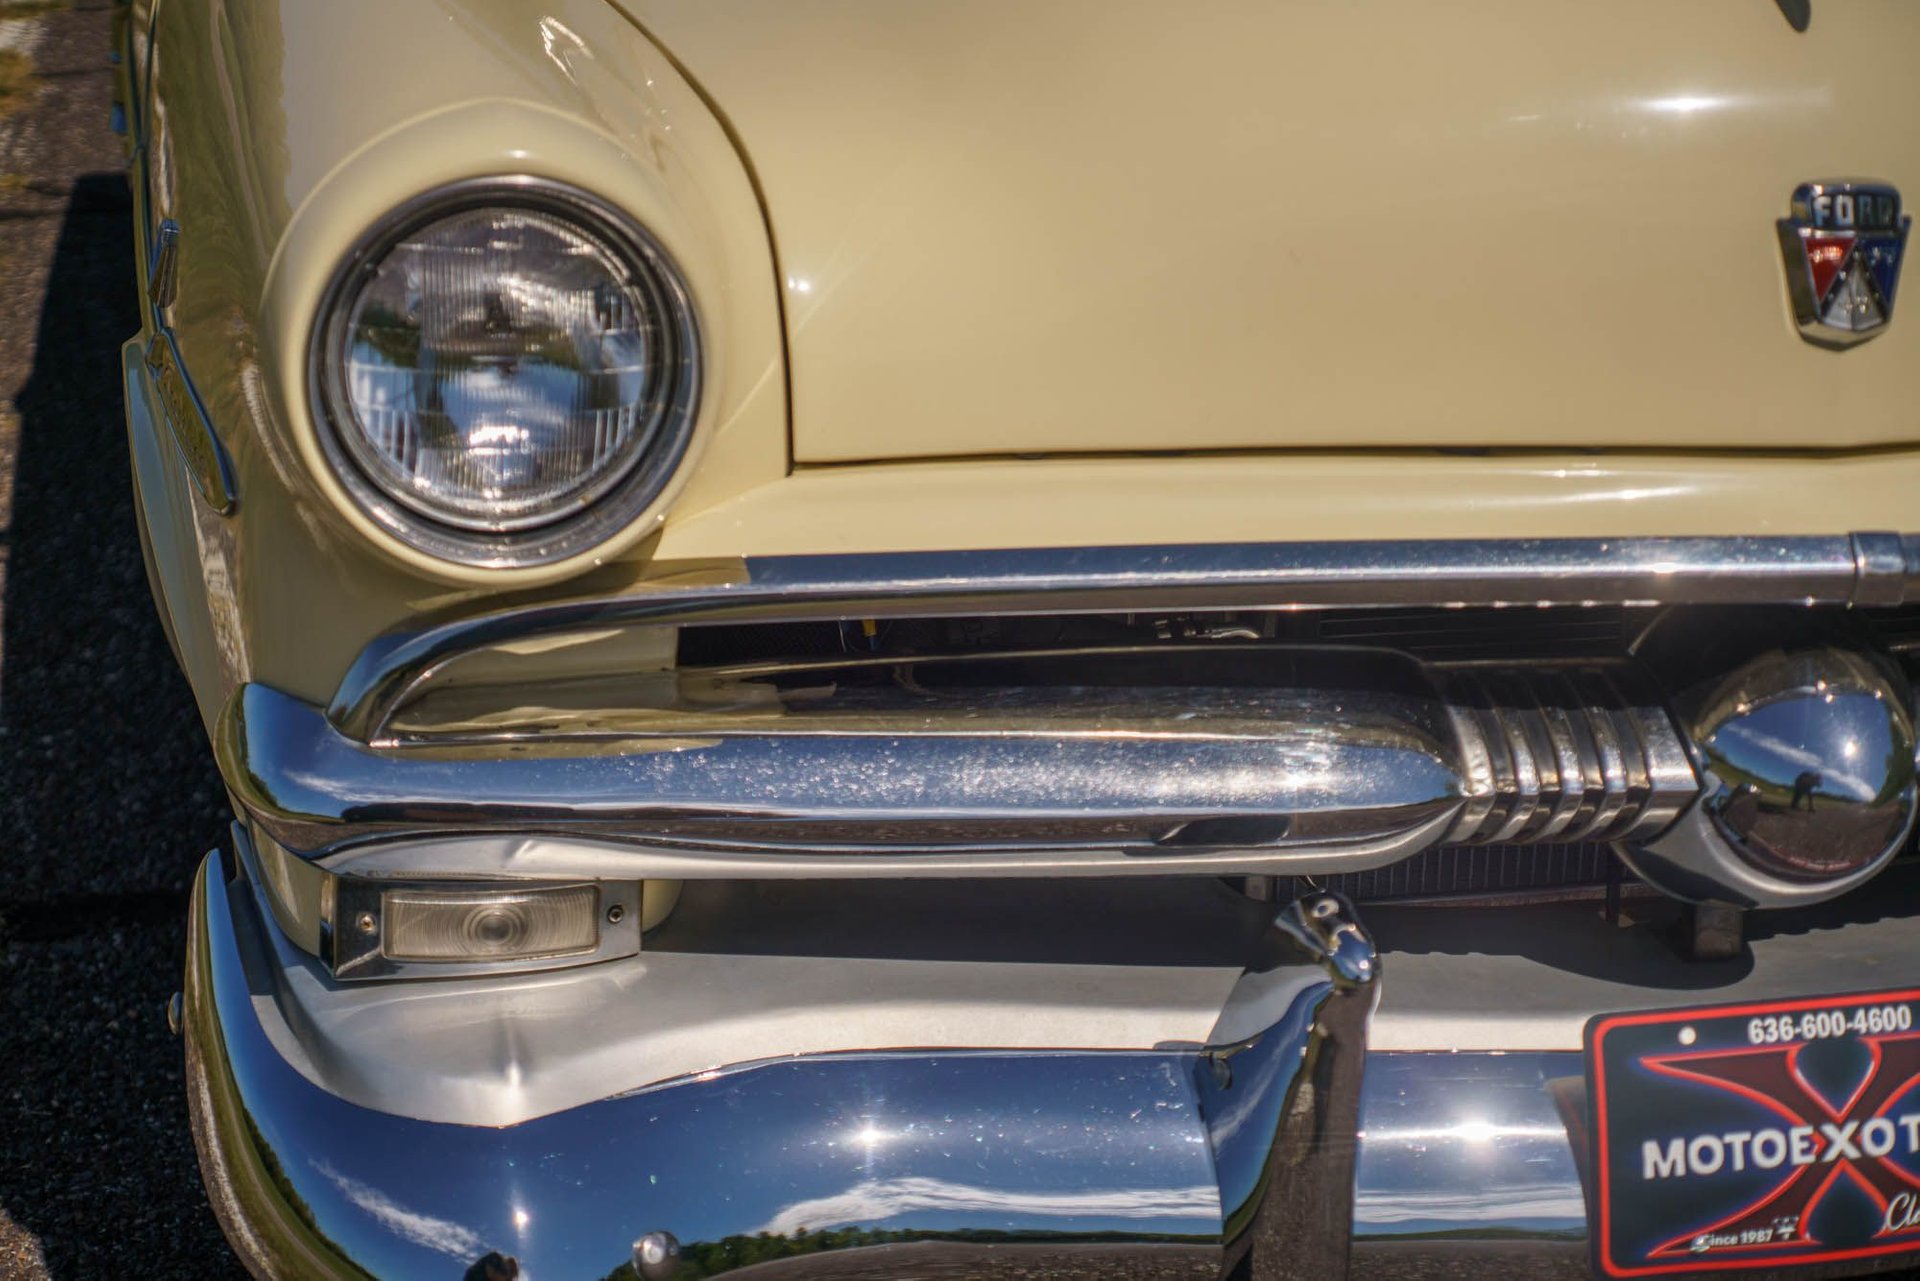 1953 ford crestliner